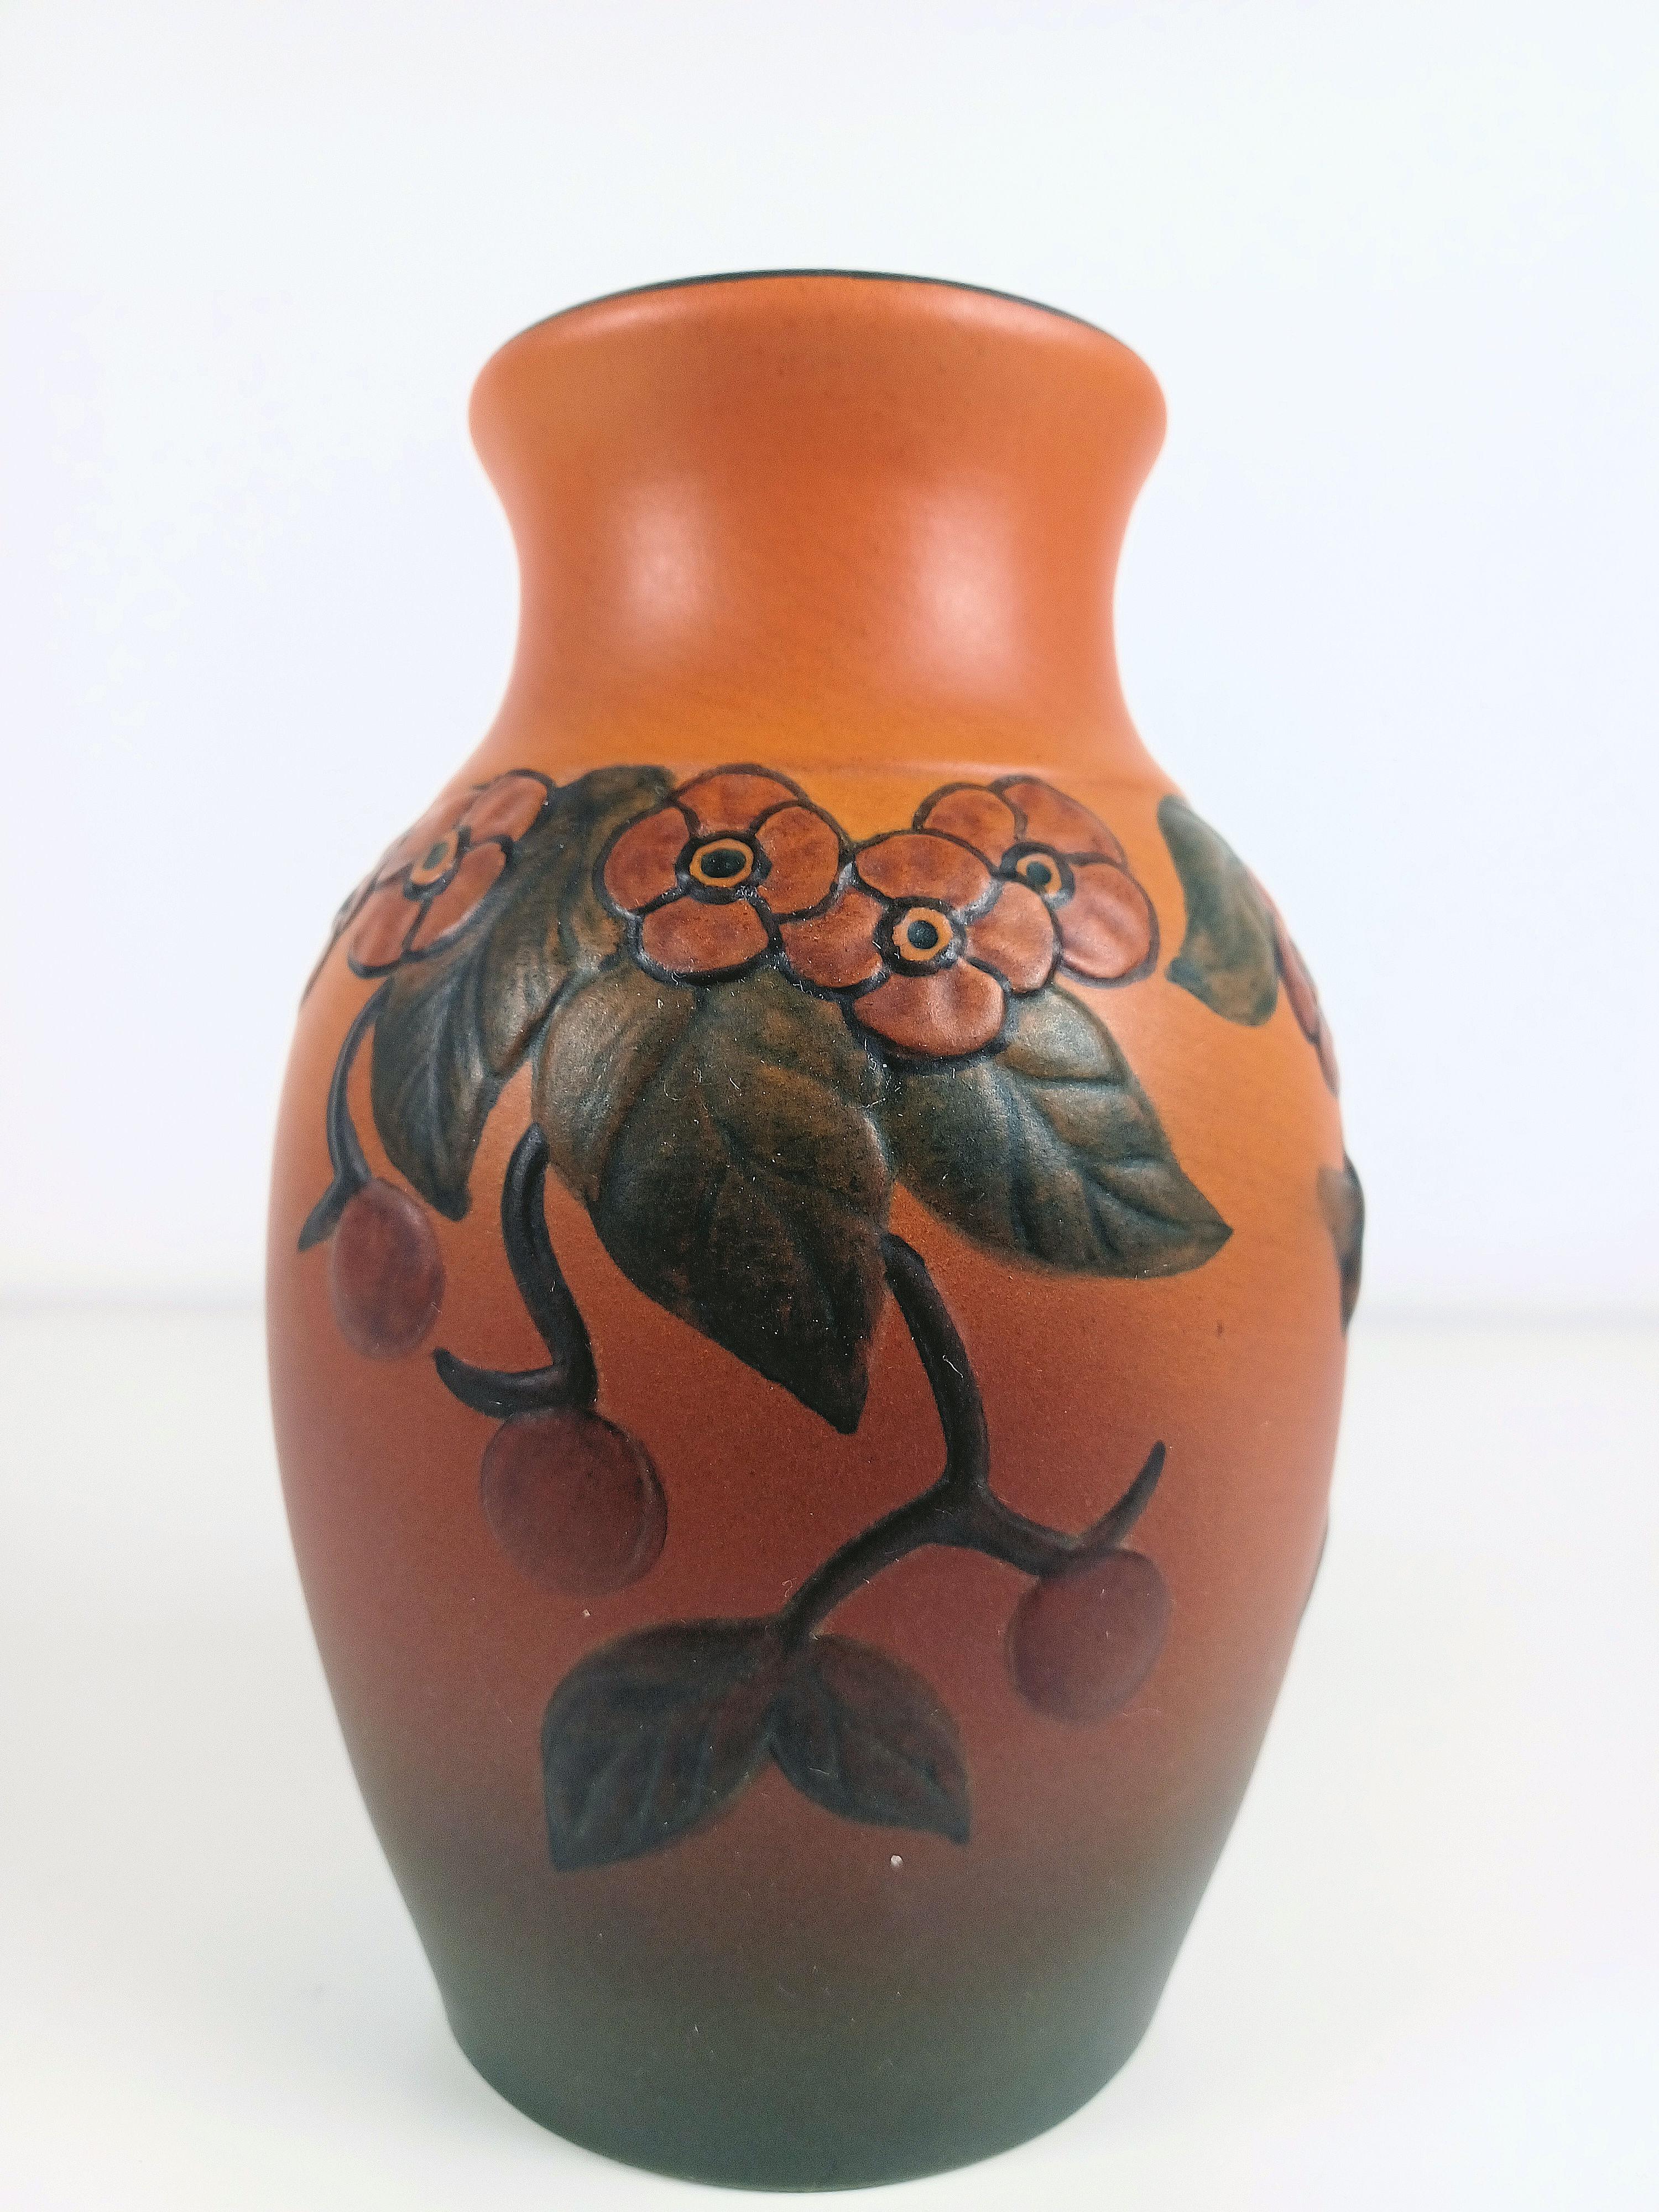 Handgefertigte dänische Vase im Jugendstil mit Blumendekor von P. Ipsens Enke

Die handgefertigte Jugendstilvase wurde 1927 von Axel Sørensen entworfen und ist mit  Blüten, Blätter, Beeren und eine einzelne Biene auf dem Weg zu einer Blüte. 

P.